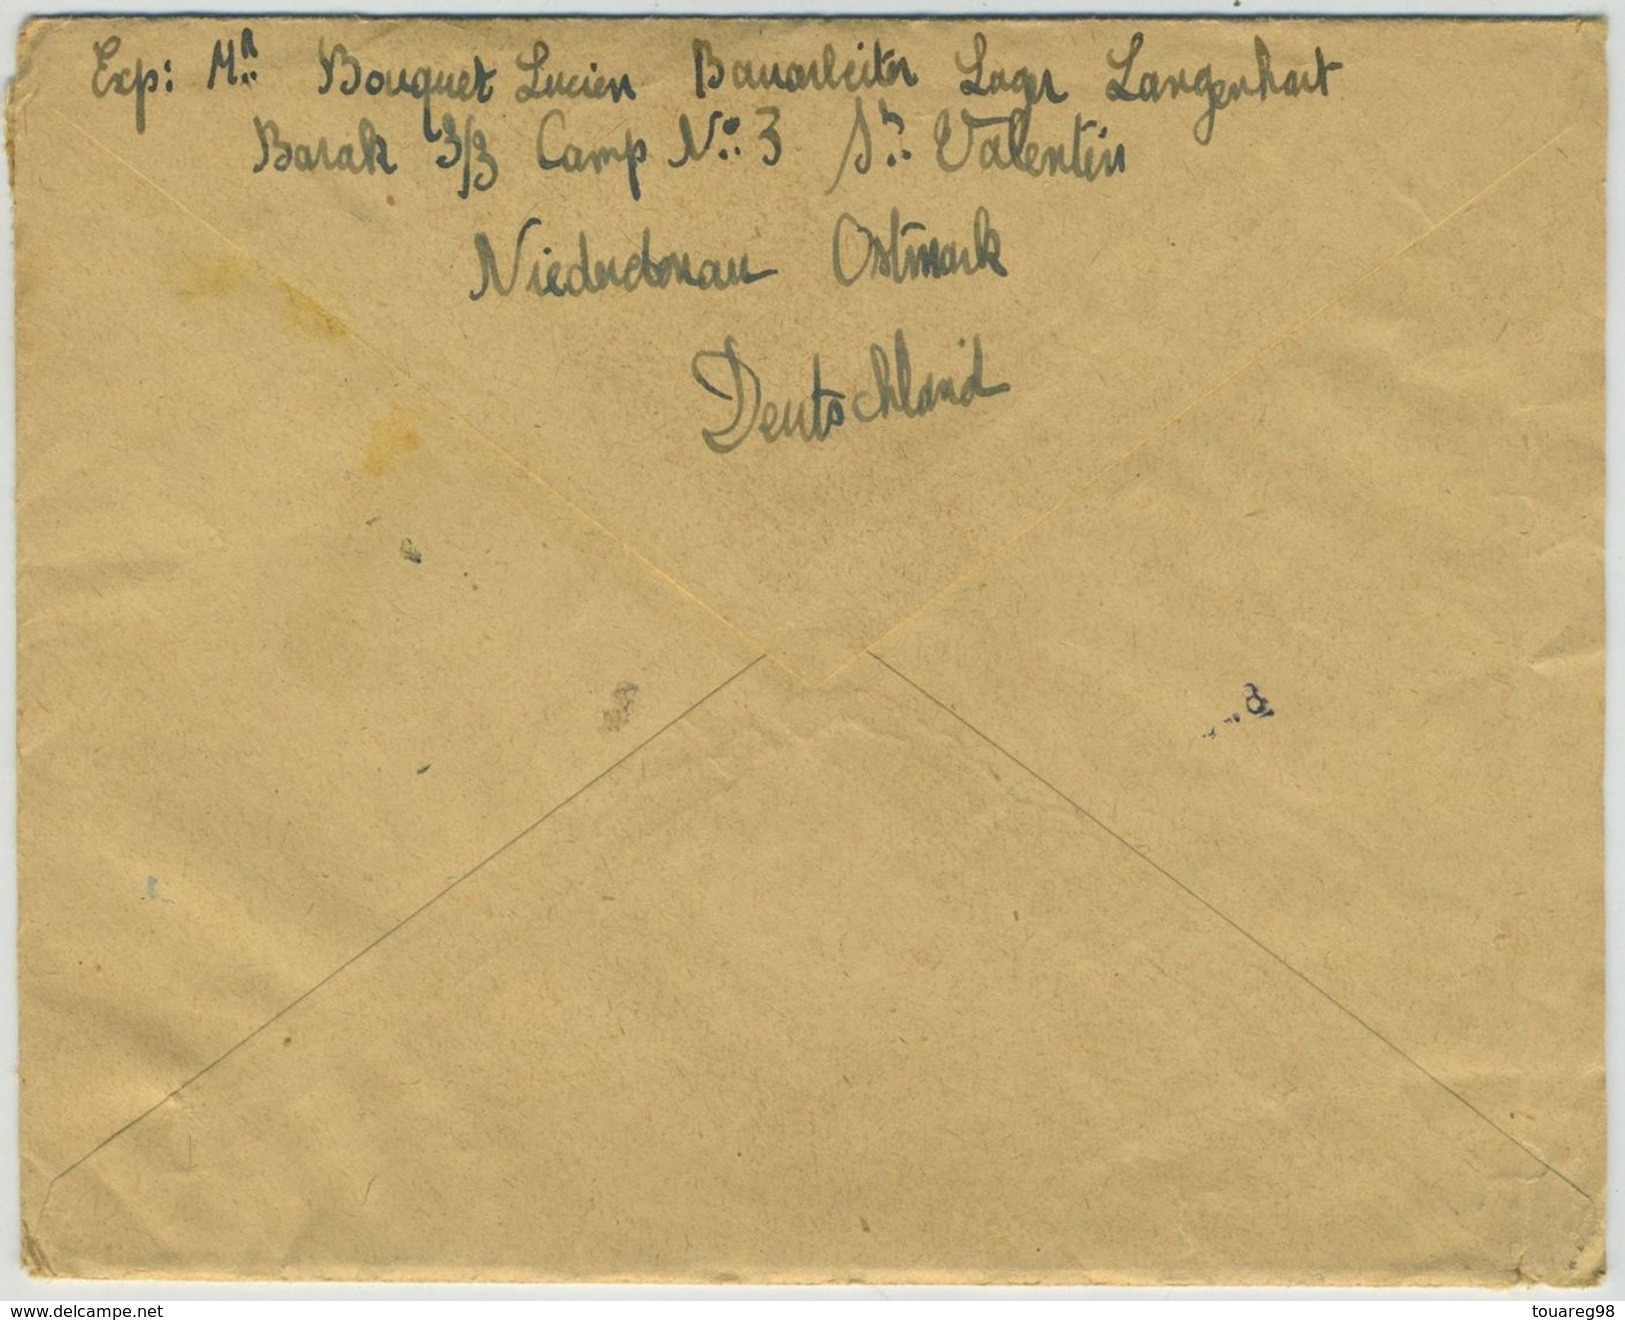 3 lettres. 1943 camp de Sankt Valentin pour Cours-les-Barres. Contôle. Exprès. Autriche. Austria.